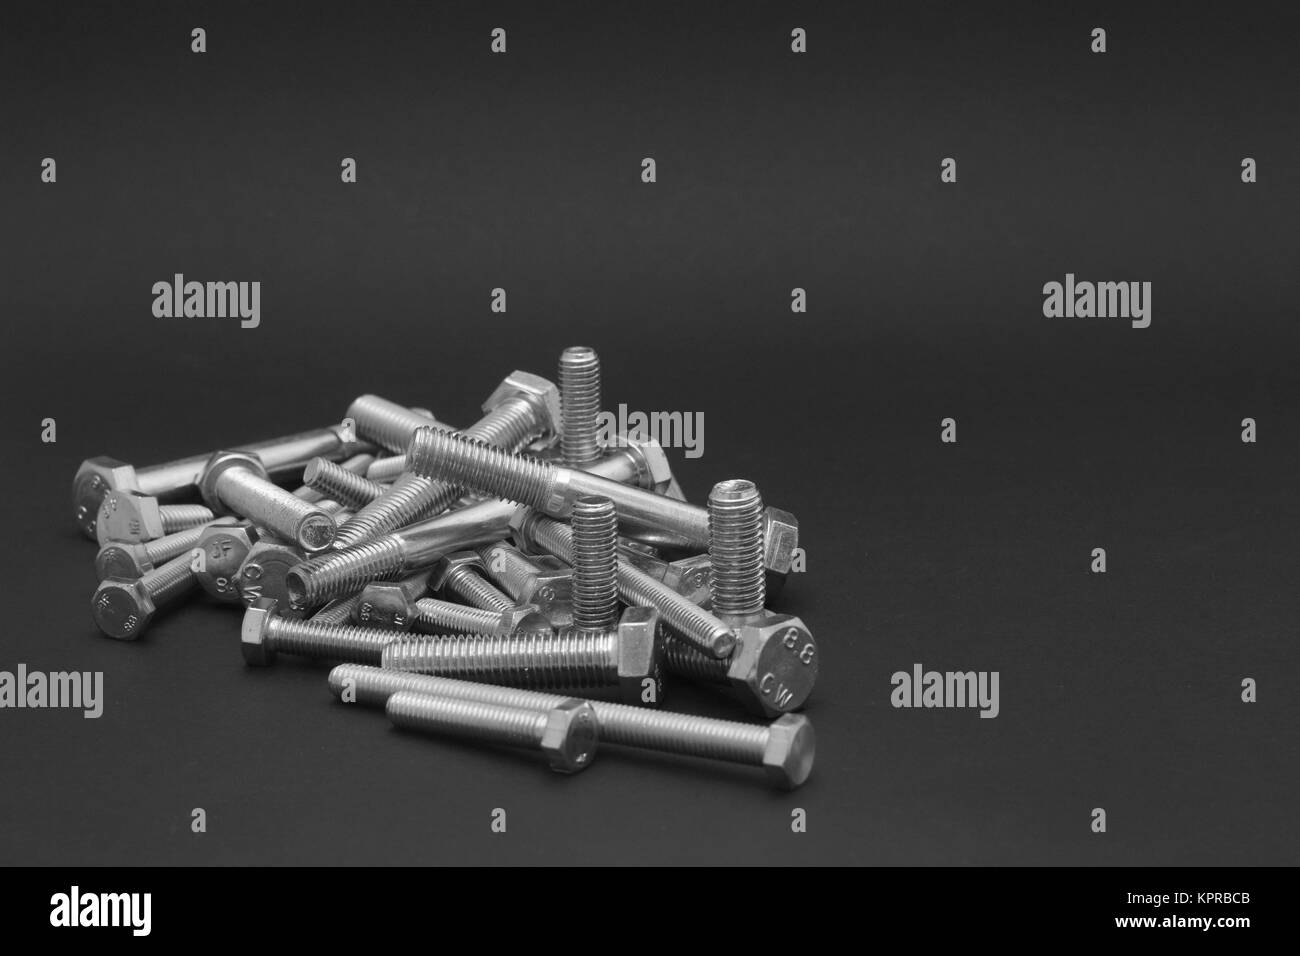 Fabricación de tornillos Imágenes de stock en blanco y negro - Página 3 -  Alamy